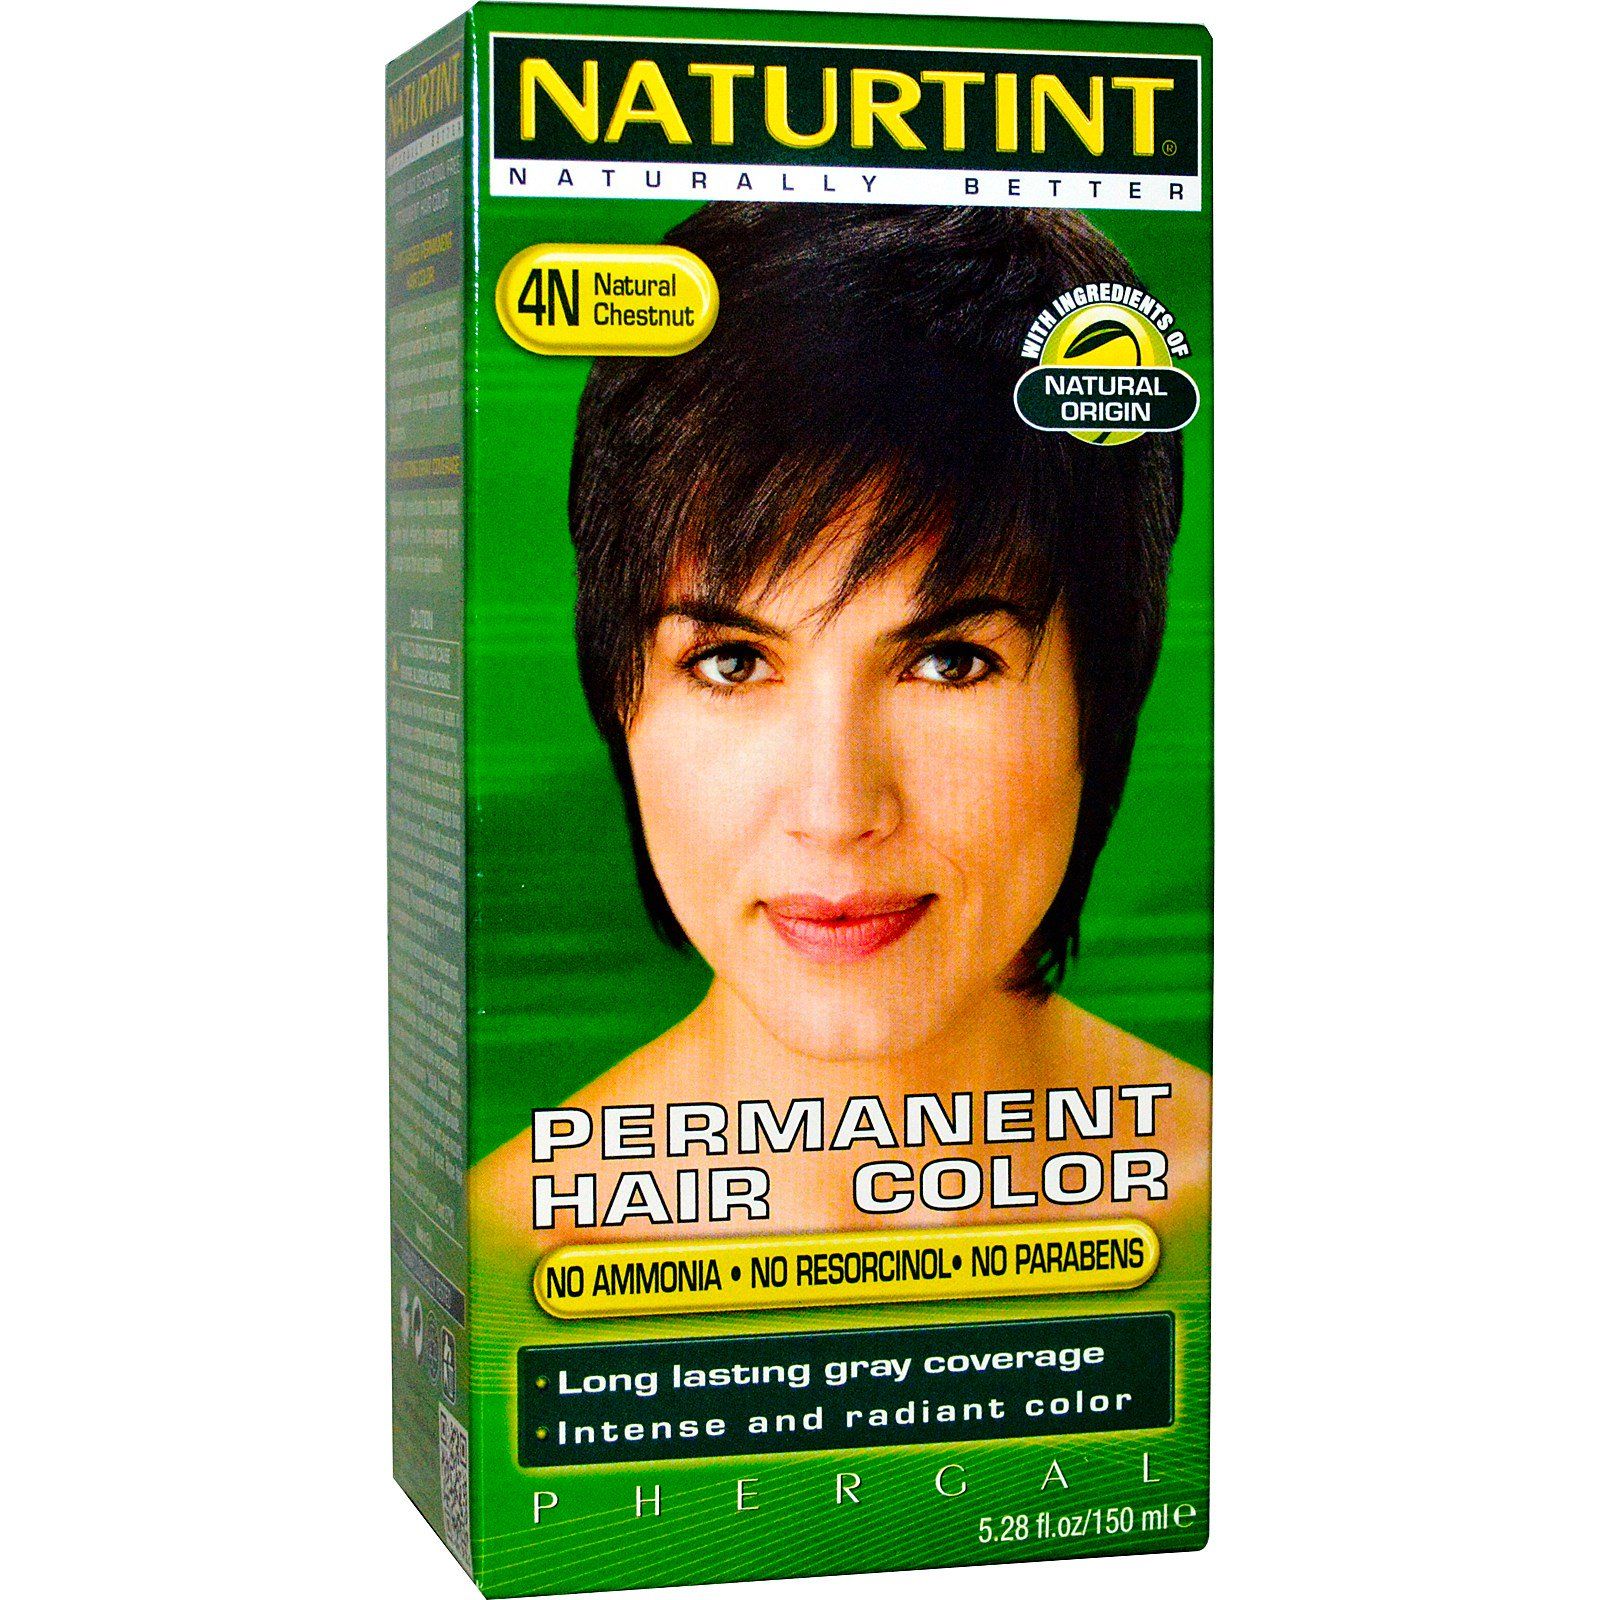 Naturtint Стойкая краска для волос 4N Натуральный каштан 5,28 жидкой унции (150 мл) стойкая краска для волос 4n натуральный каштан 155мл naturtint